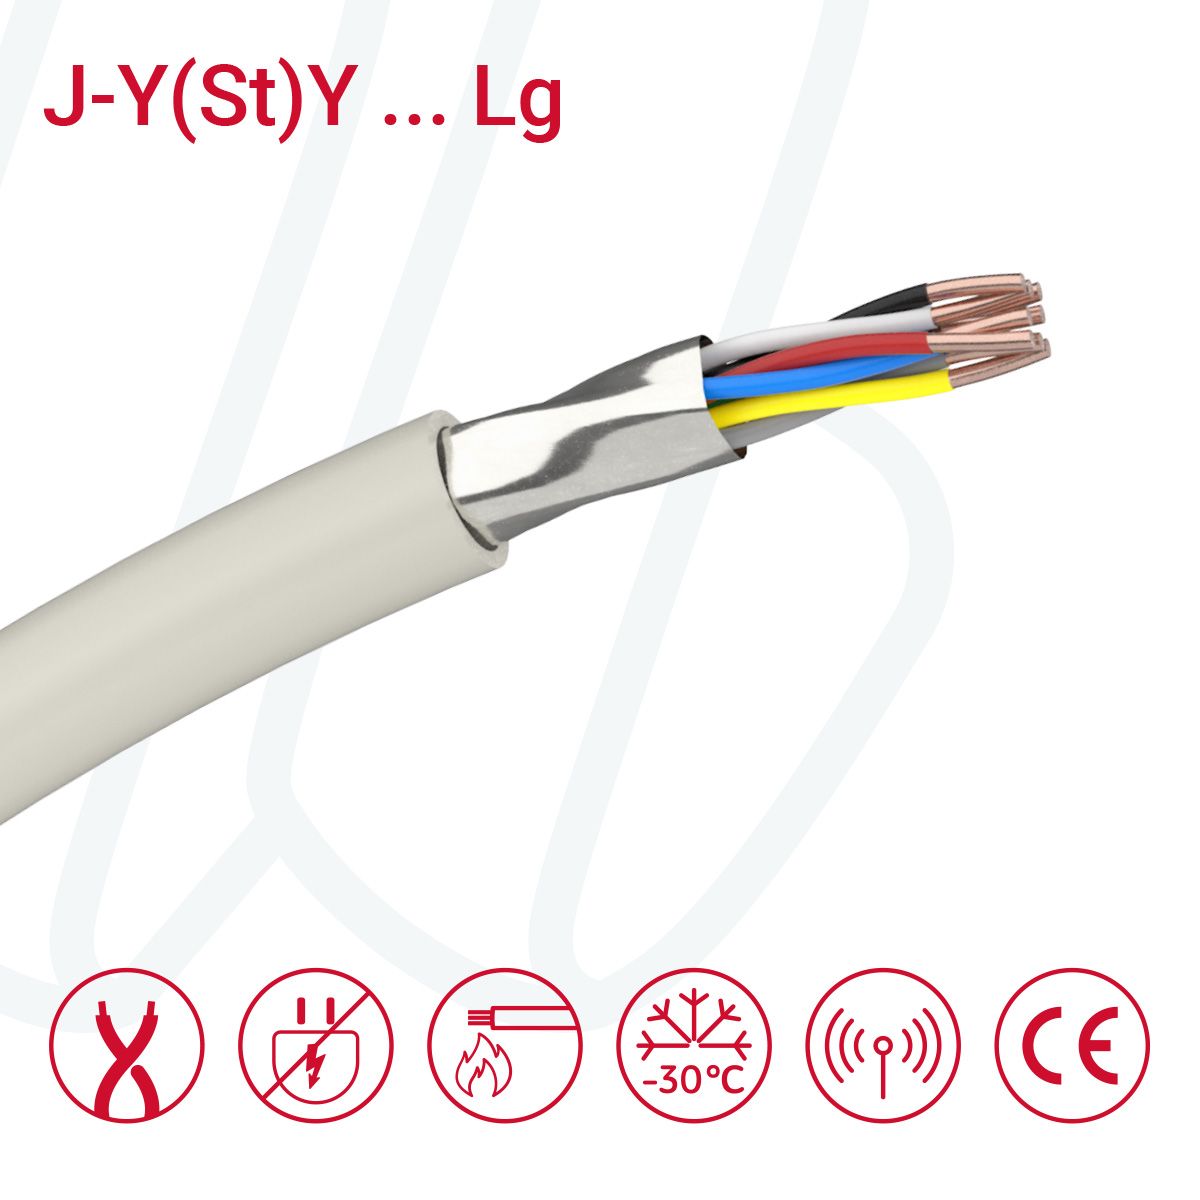 Кабель J-Y(St)Y…LG 03X2X0.8 (0.52мм²) сірий, 06, 0.52